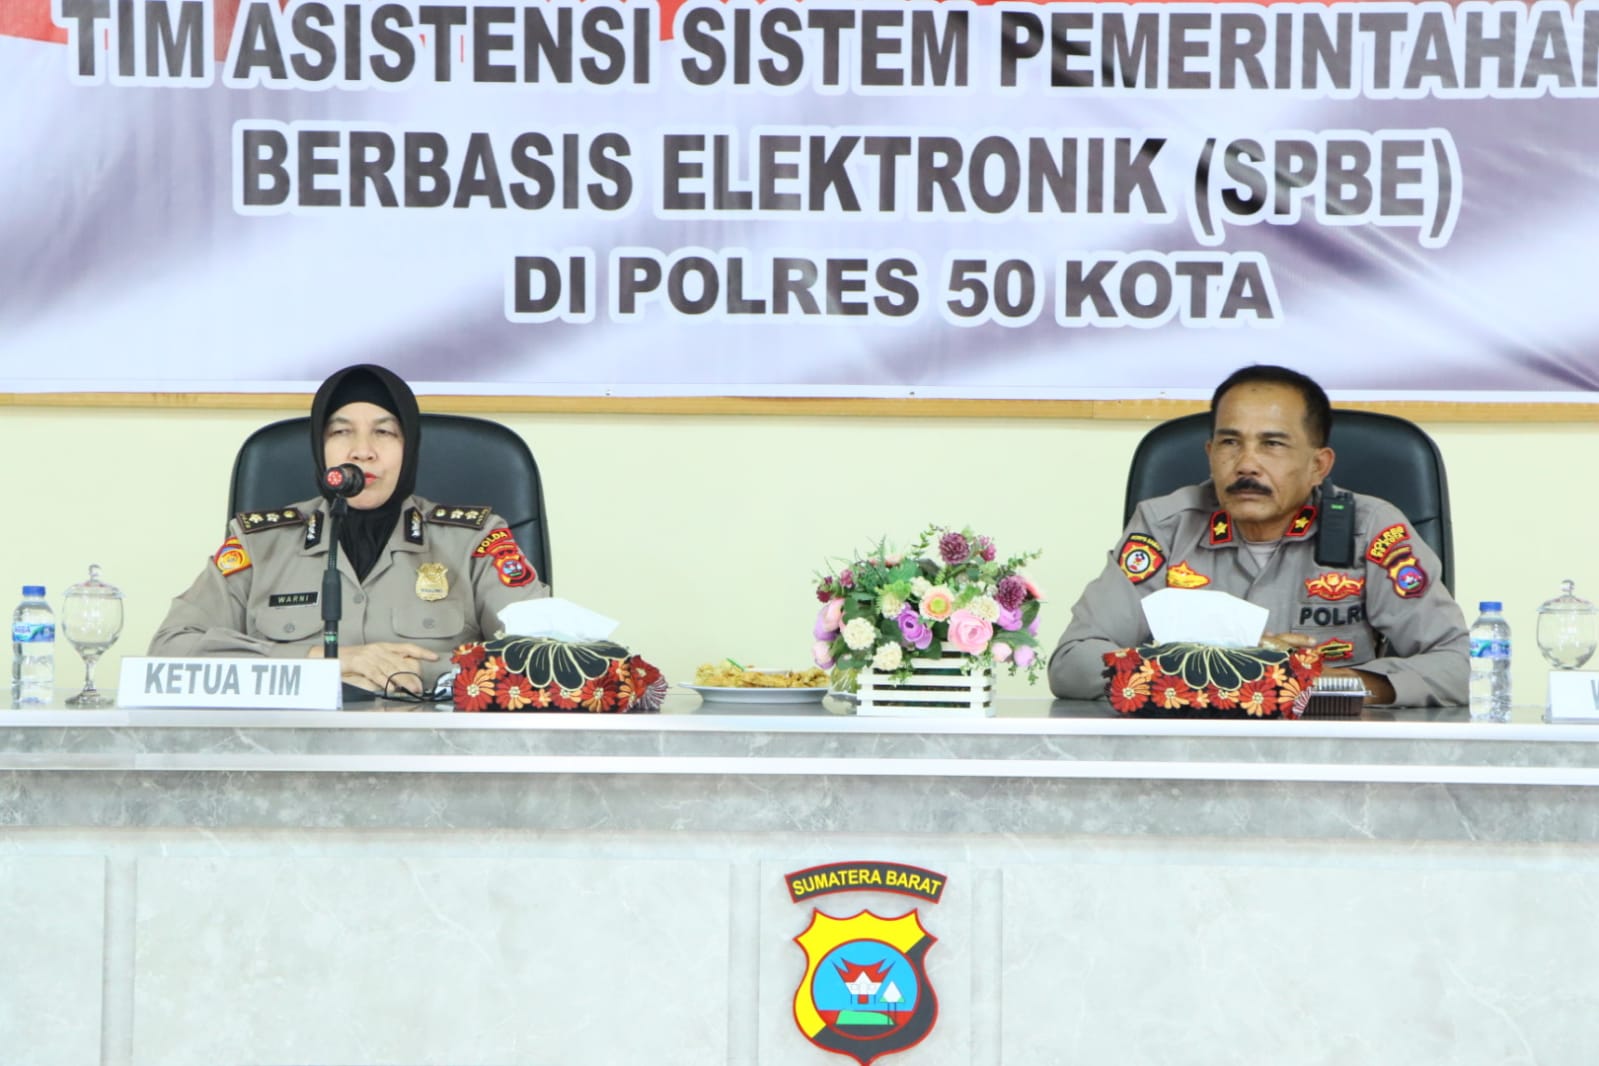 Polres 50 Kota Terima Kunjungan Tim Asistensi Sistem Pemerintahan Berbasis Elektronik (SPBE)